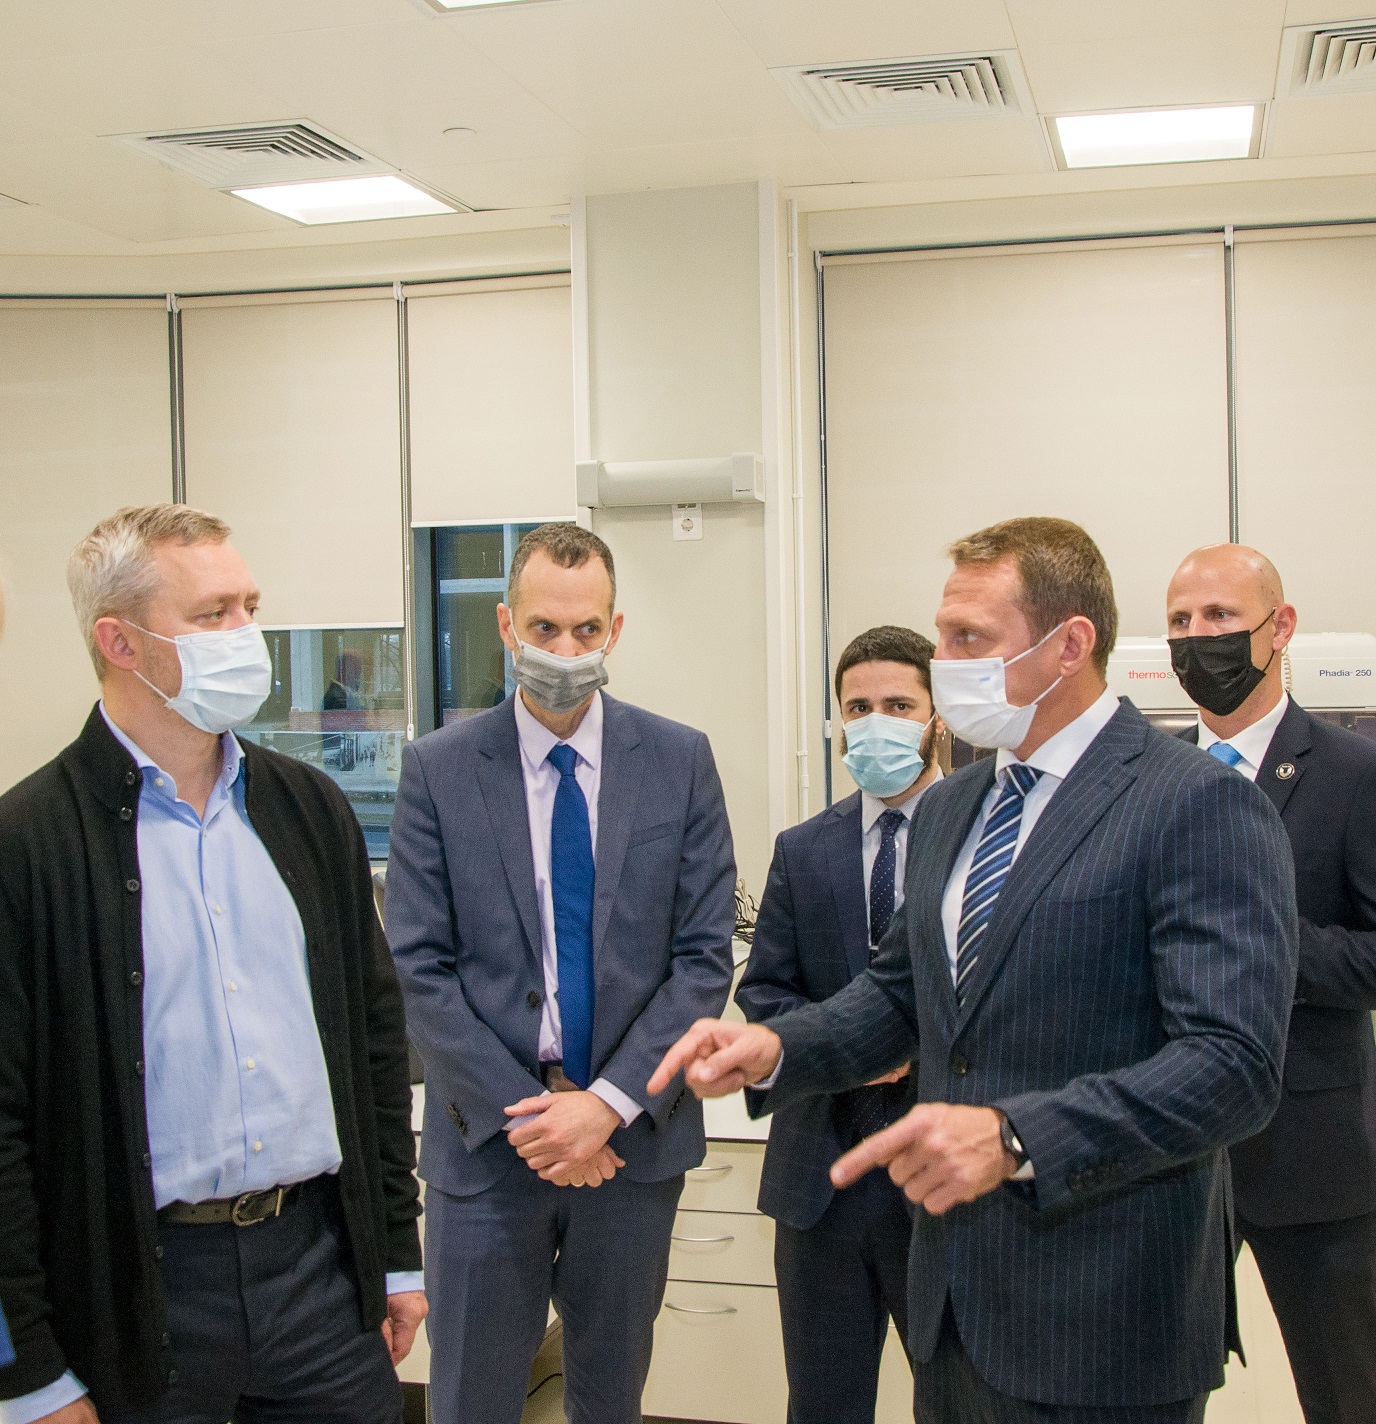 фото: Министр туризма Израиля посетил московский филиал израильской клиники Hadassah Medical Moscow